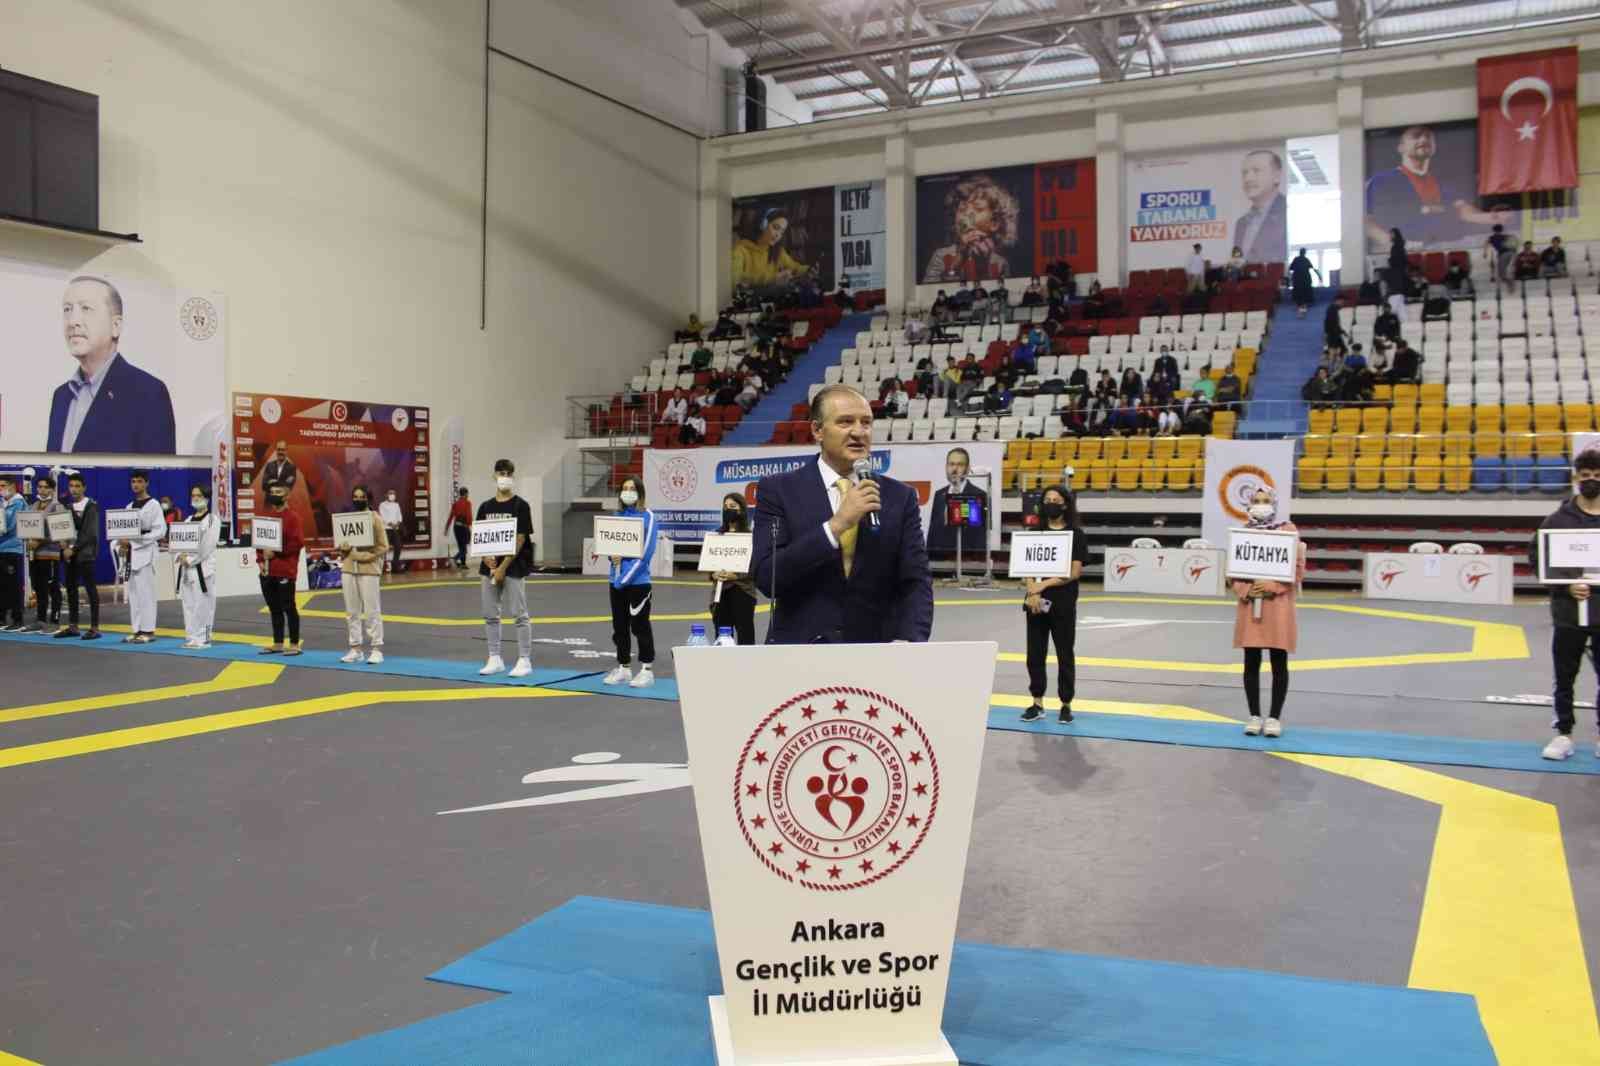 Türkiye Gençler Tekvando Şampiyonası için seremoni düzenlendi #ankara